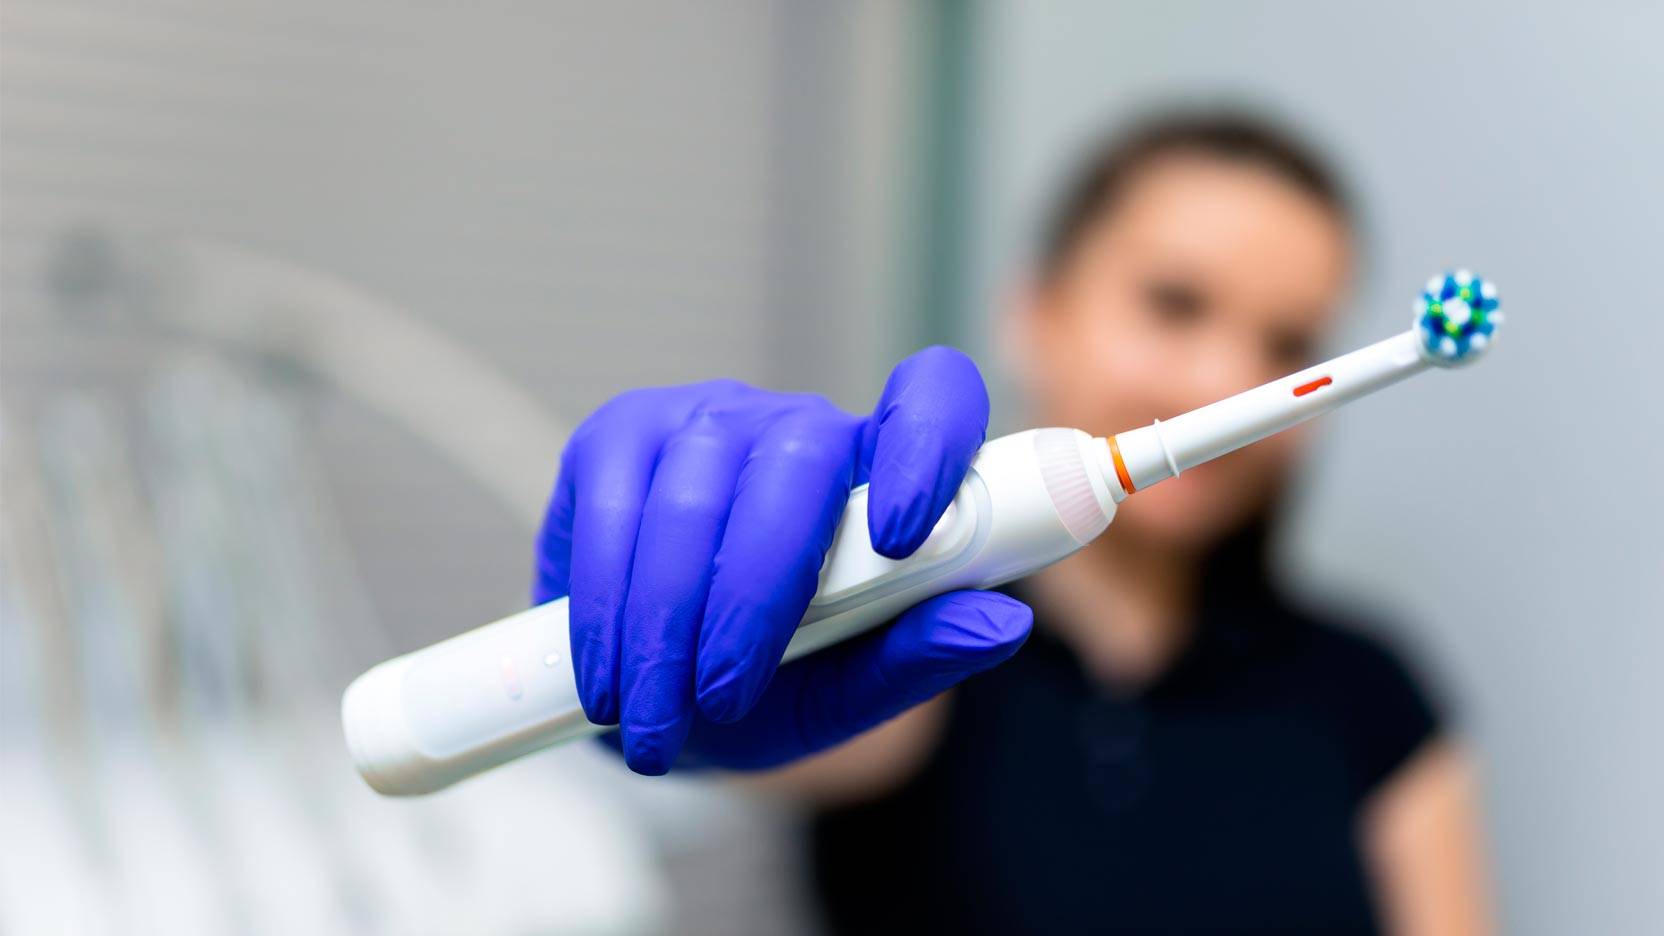 Elektrisk tandbørste – vælg den rigtige